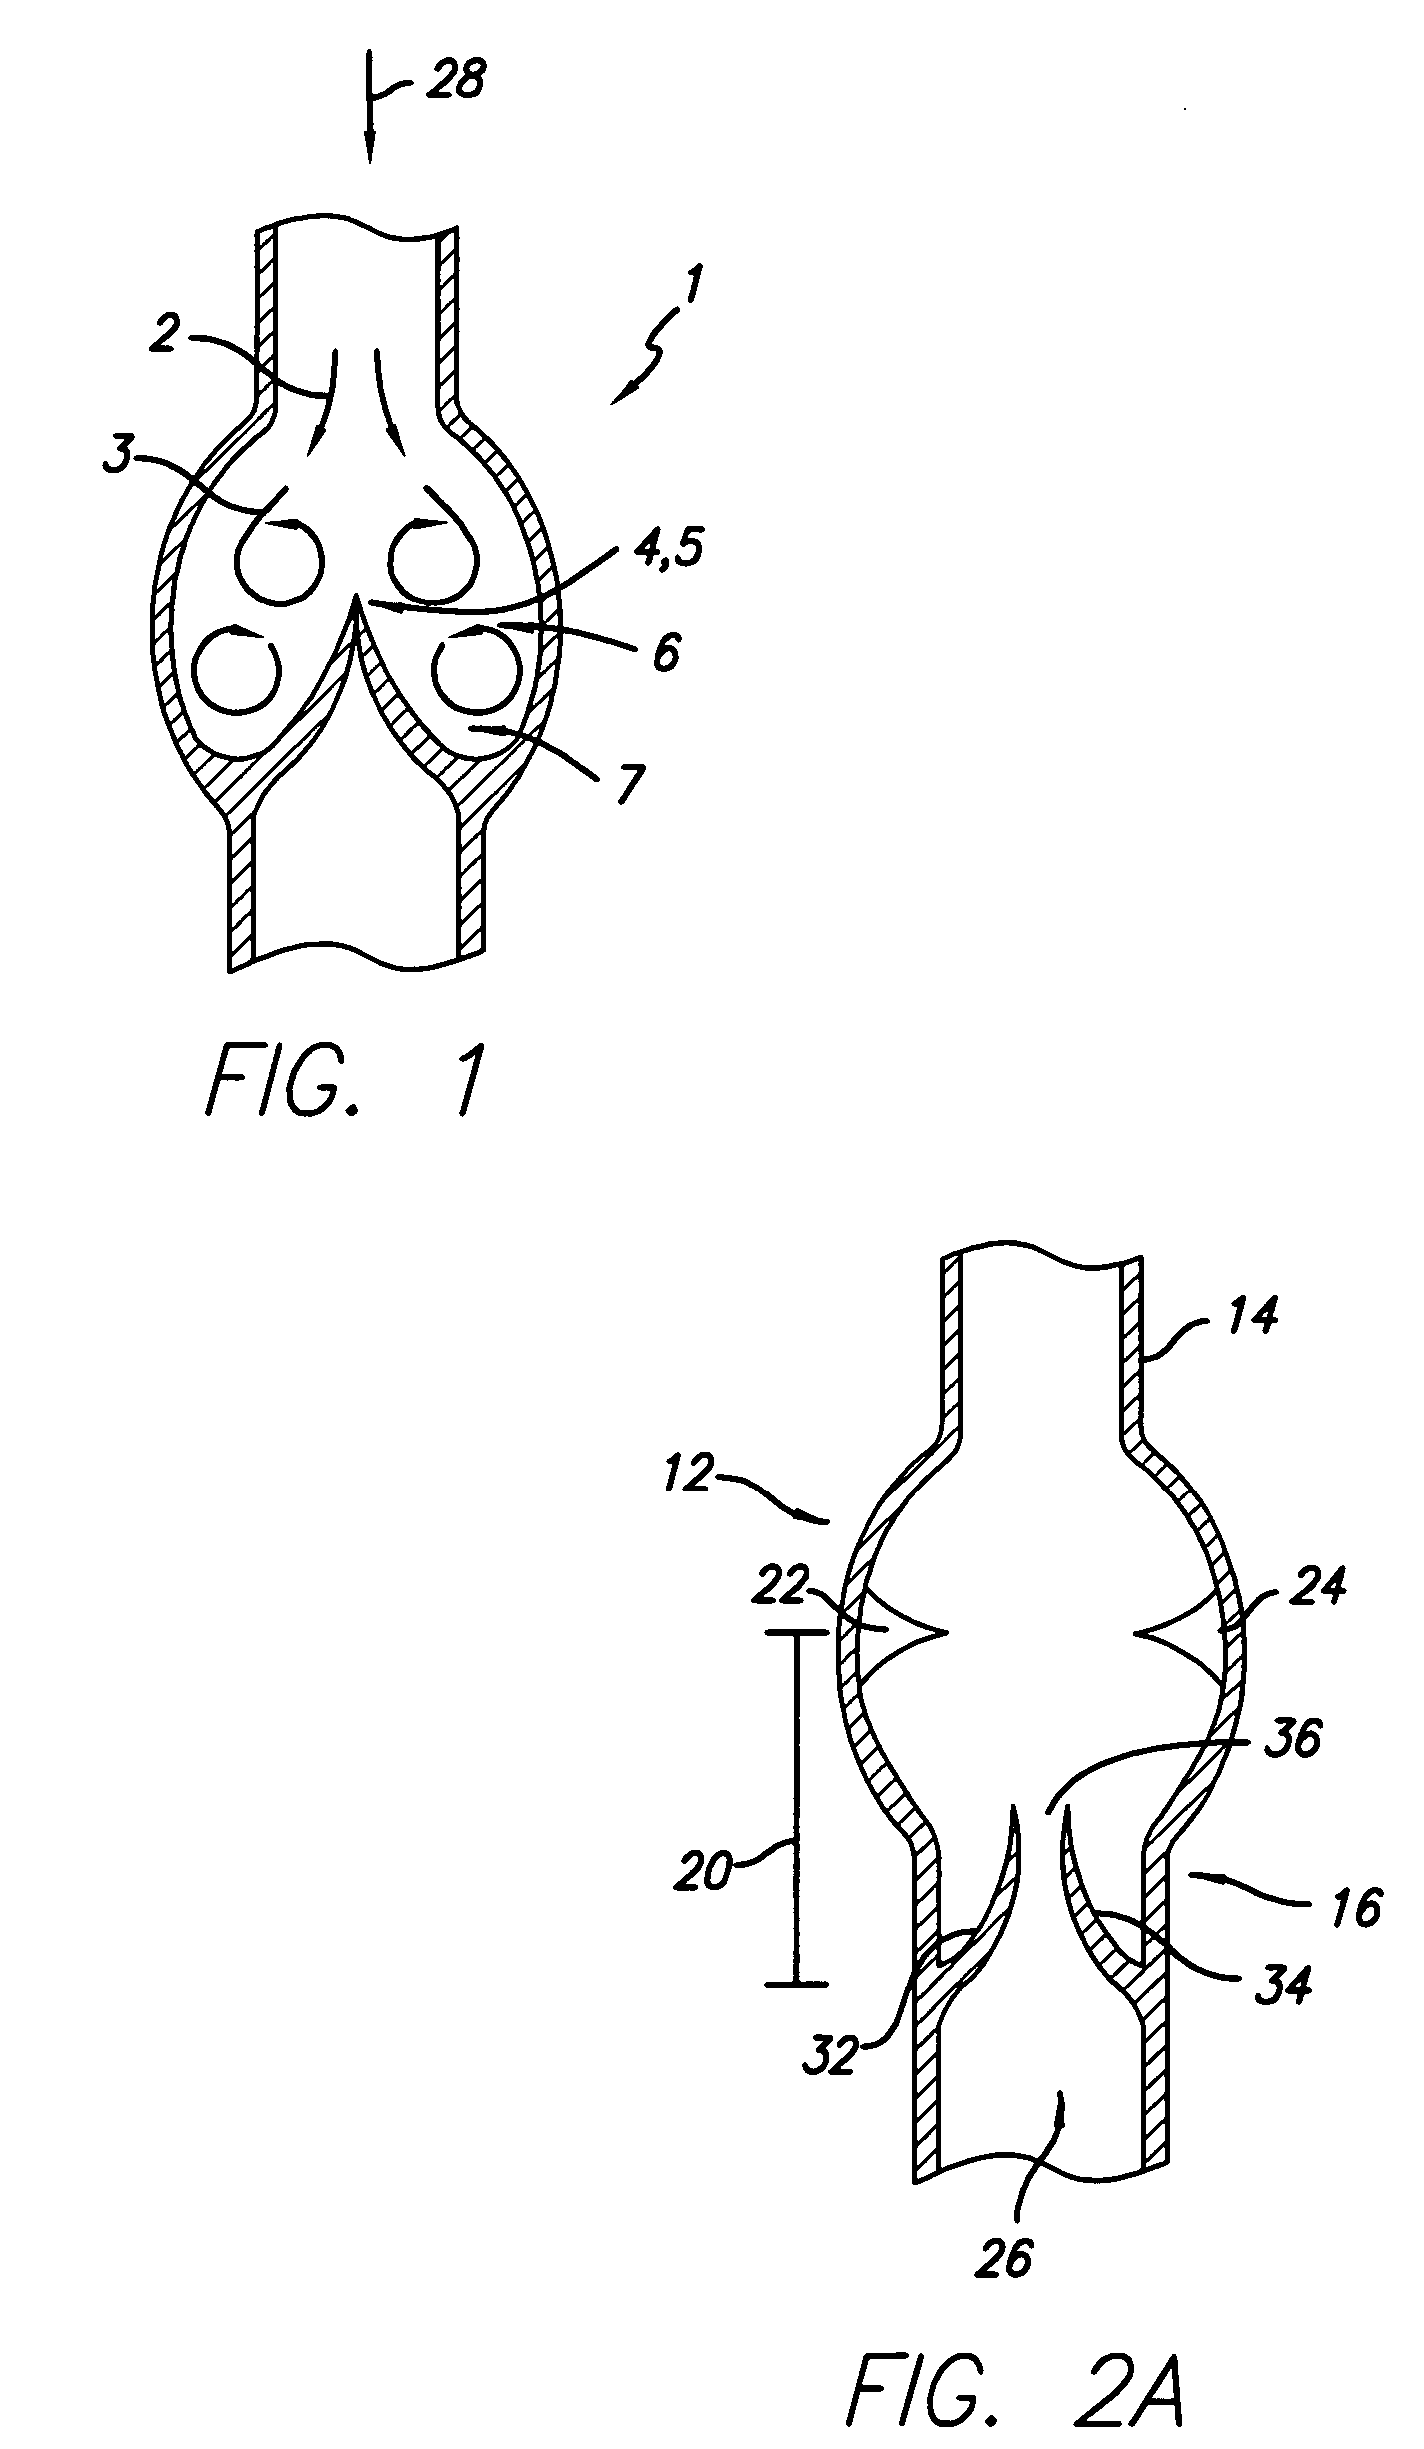 Method for implanting prosthetic valves